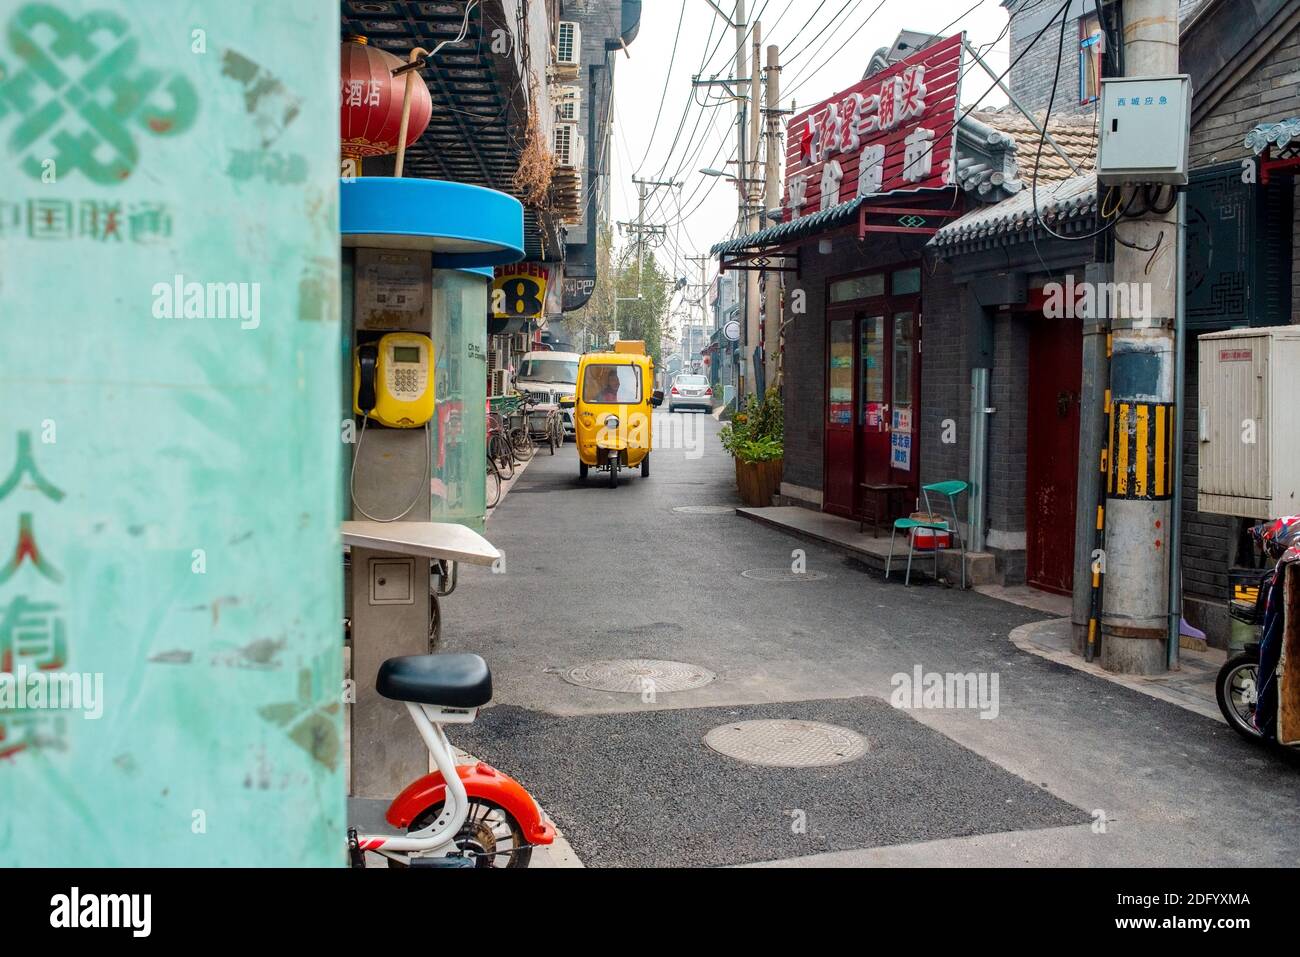 Gelbe Auto-Rikscha fährt entlang einer Straße im historischen Hutong-Viertel. Hutong ist eine Art von engen Straßen oder Gassen, die häufig mit Peking verbunden sind. Stockfoto